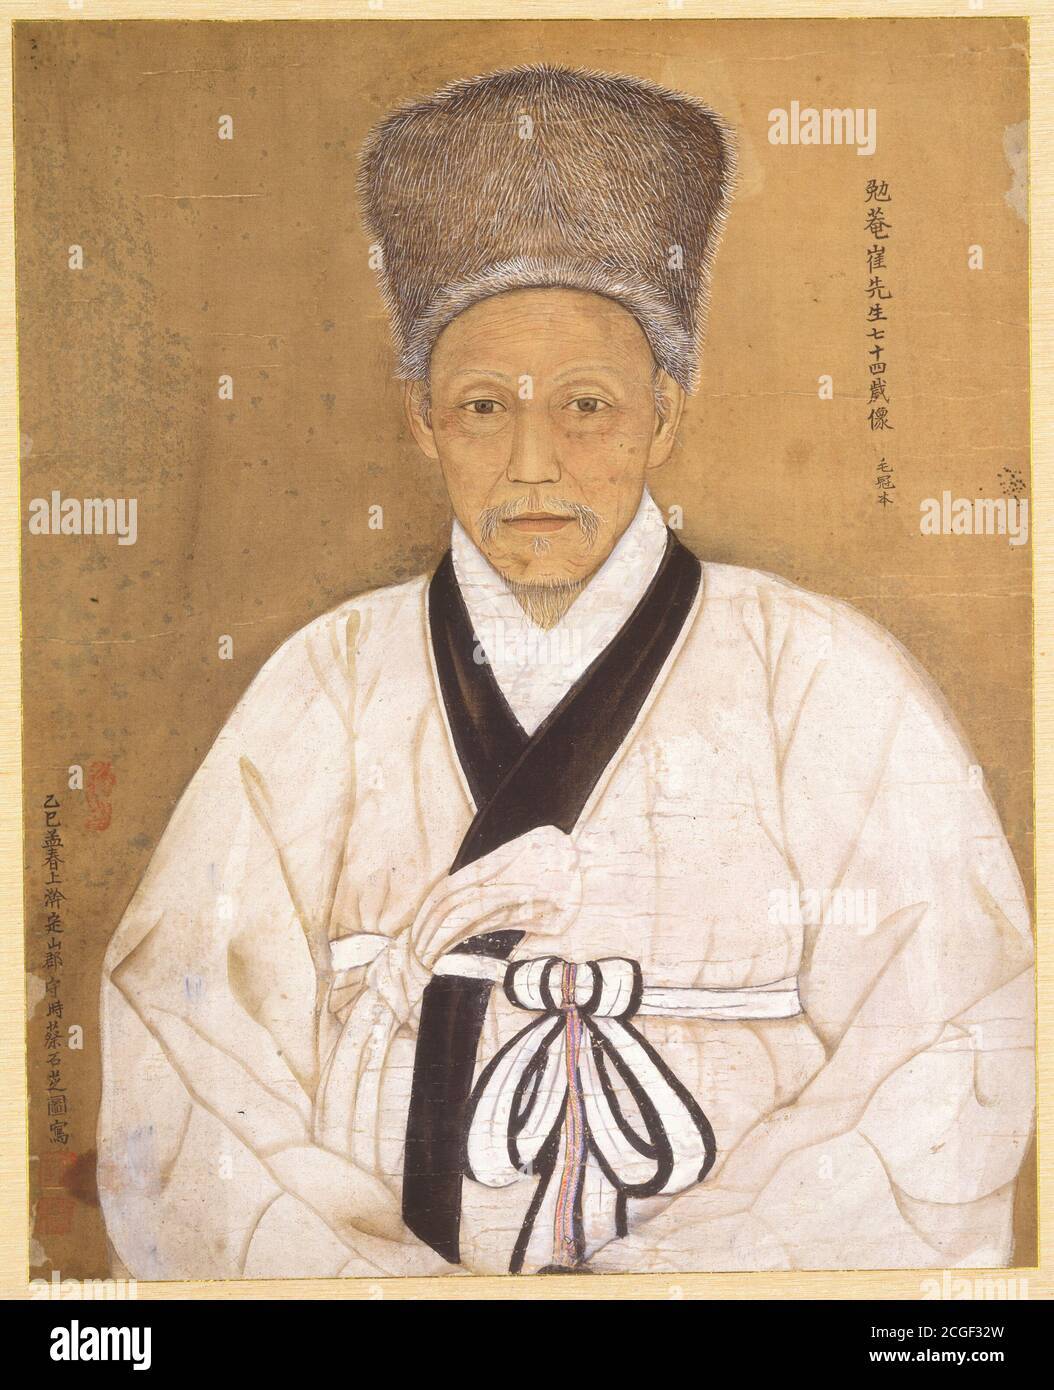 Porträt von Choi Ik-hyeon (1833-1906), Gelehrter, Politiker, Philosoph und General der koreanischen Guerilla-Truppen der Gerechten Armee während der koreanischen Joseon-Dynastie. Standort Nationalmuseum von Korea Stockfoto